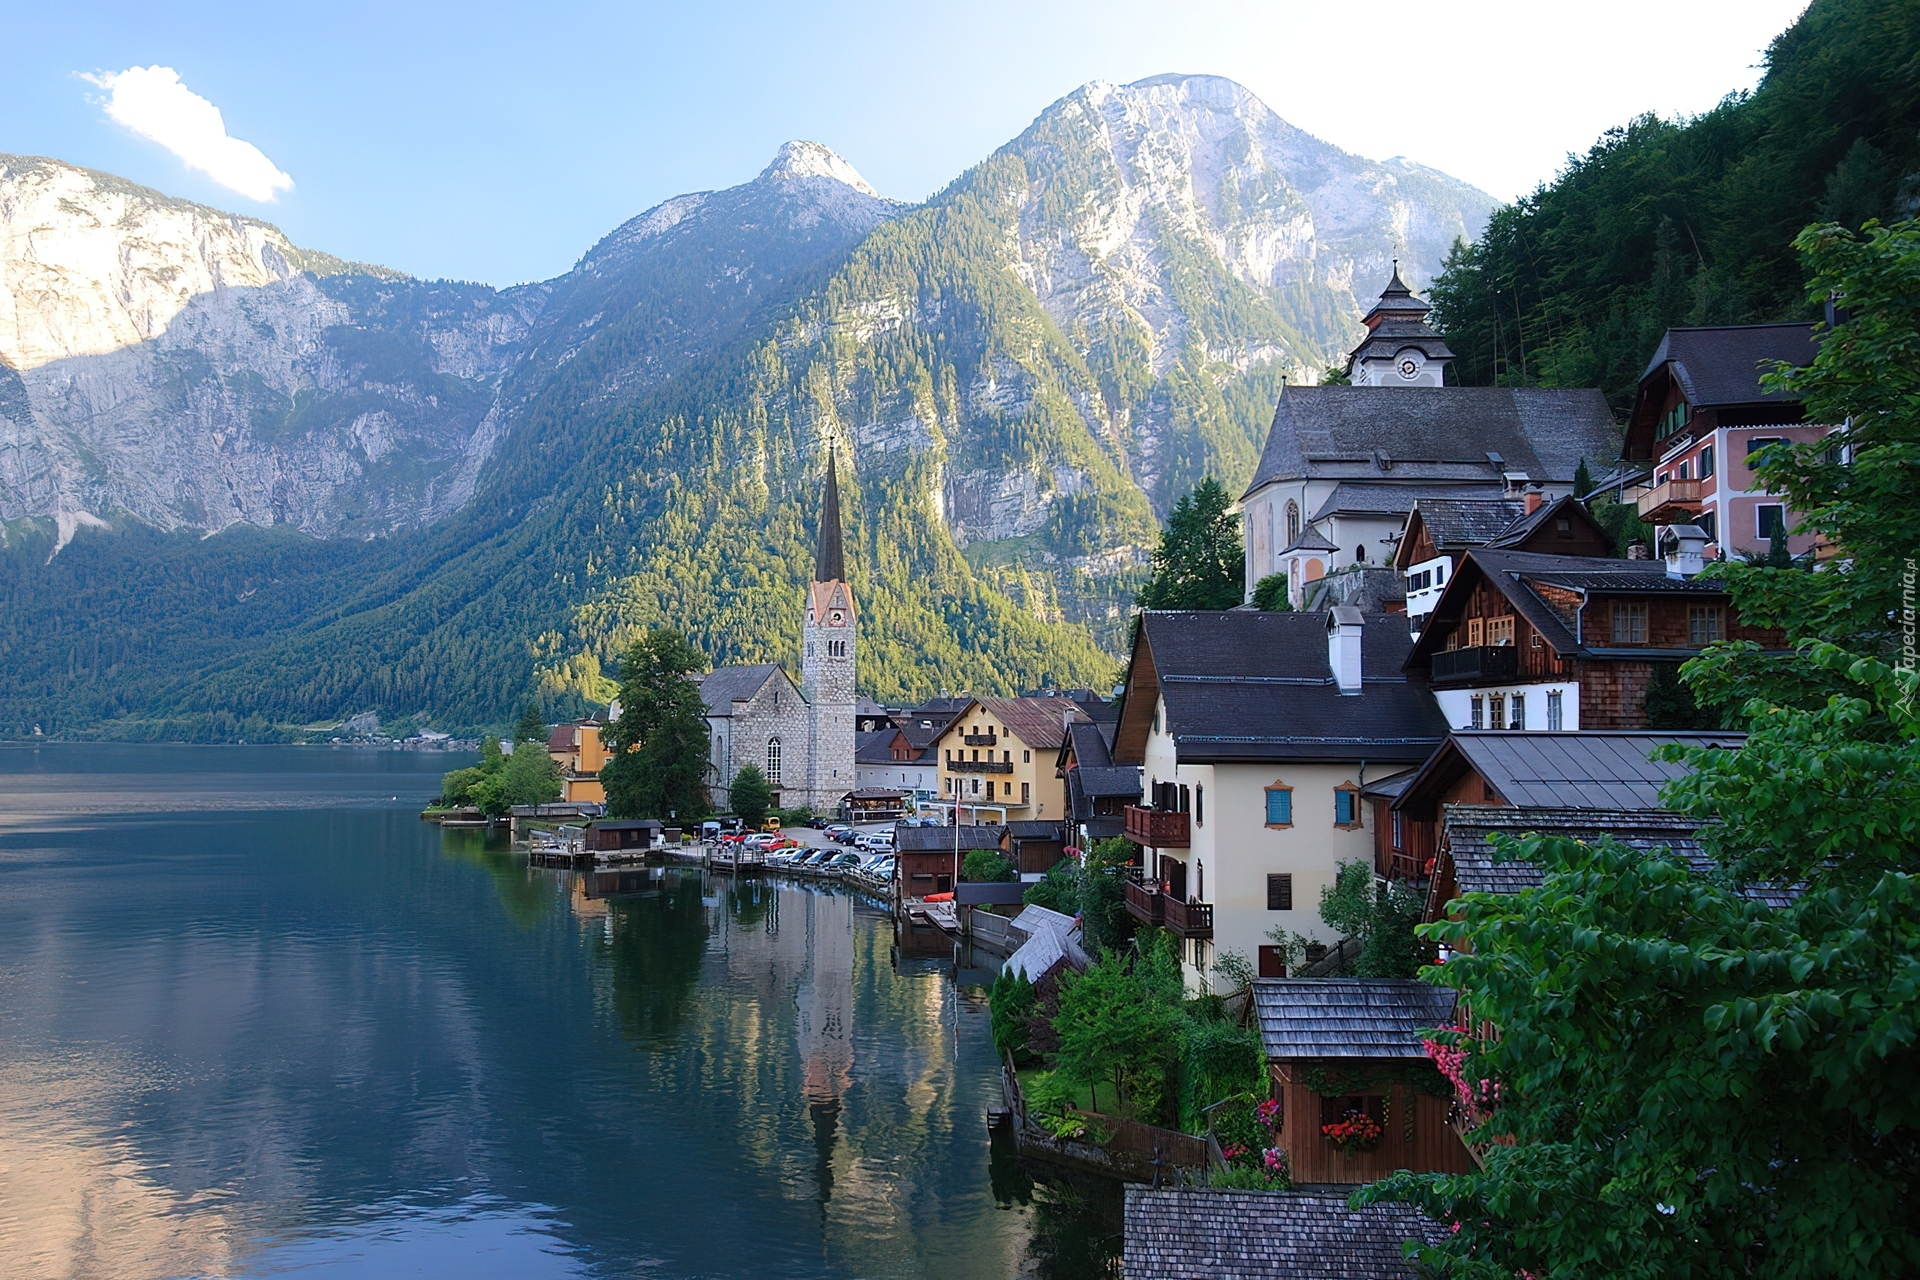 Jezioro, Góry, Zabudowanie, Hallstatt, Austria